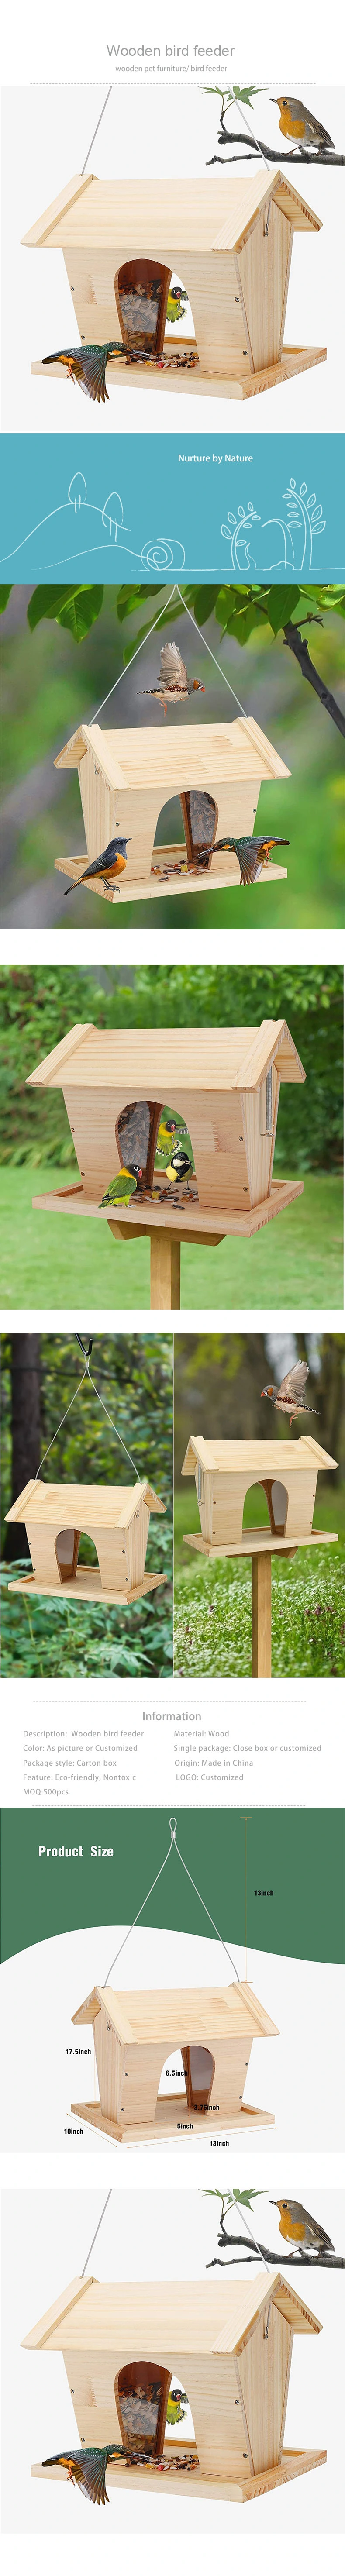 Garden Decoration Indoor and Outdoor Bird Feeder Wooden Hanging Birdhouse